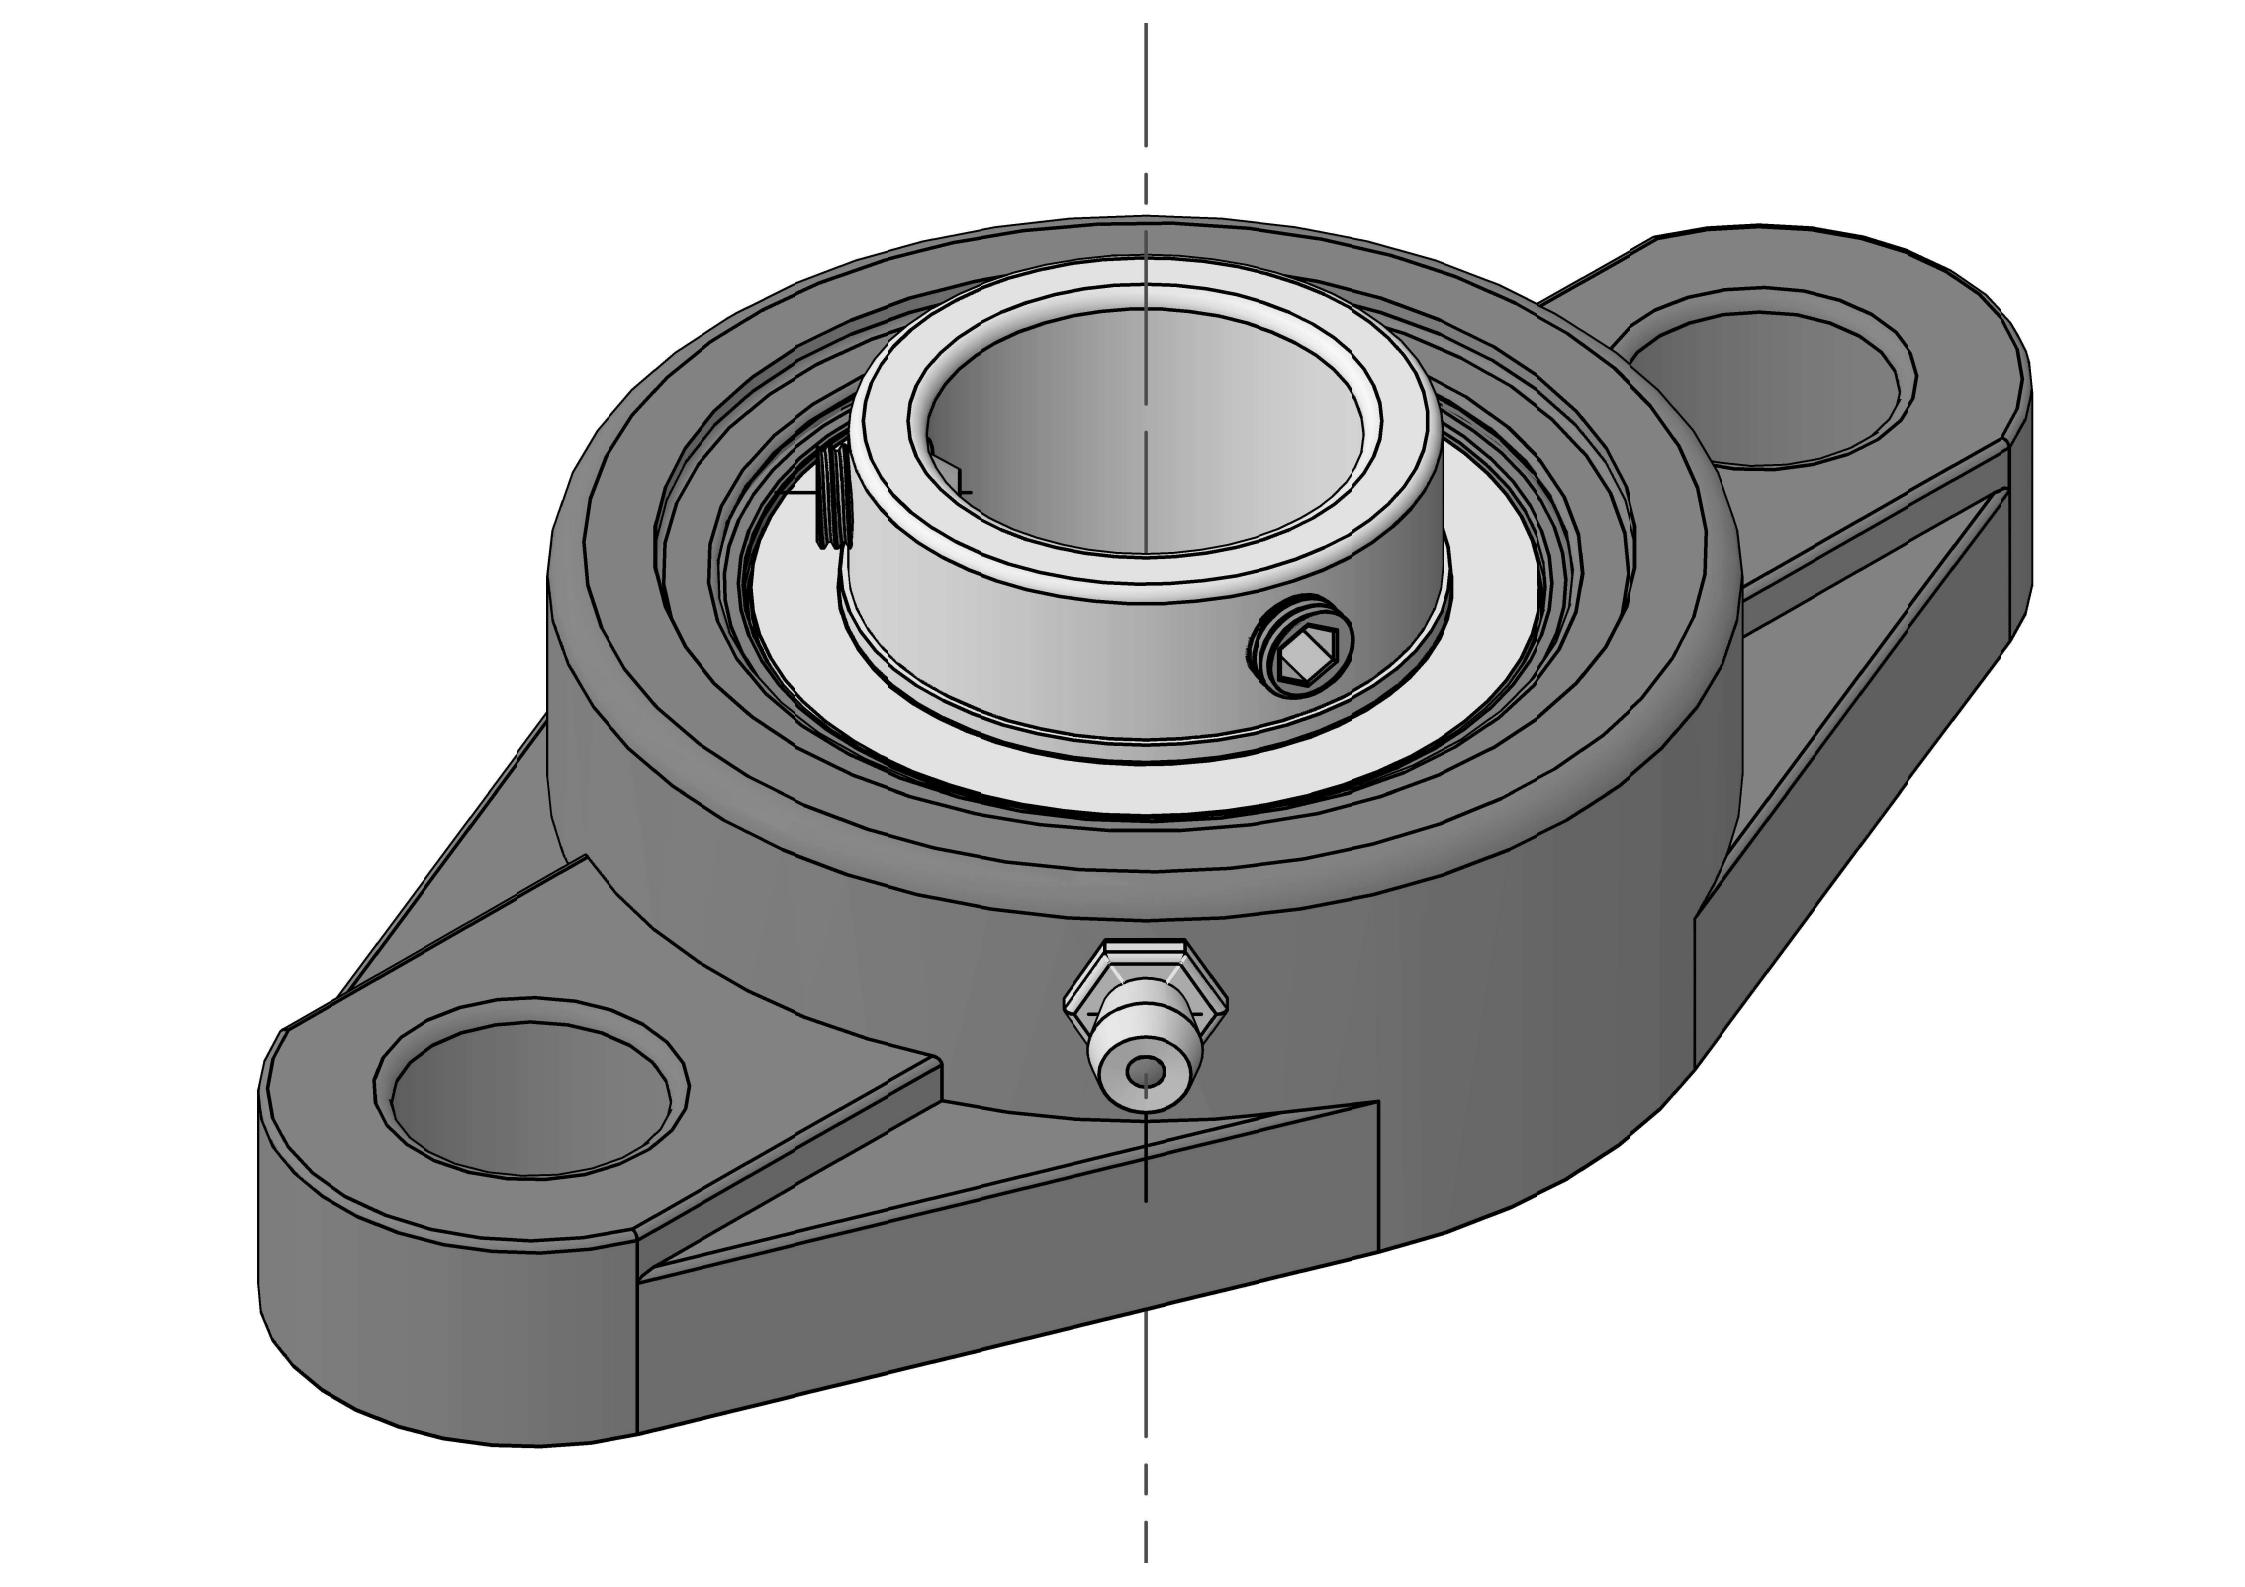 UCFL204 Zweibolzen-Ovalflanschlagereinheiten mit 20 mm Bohrung